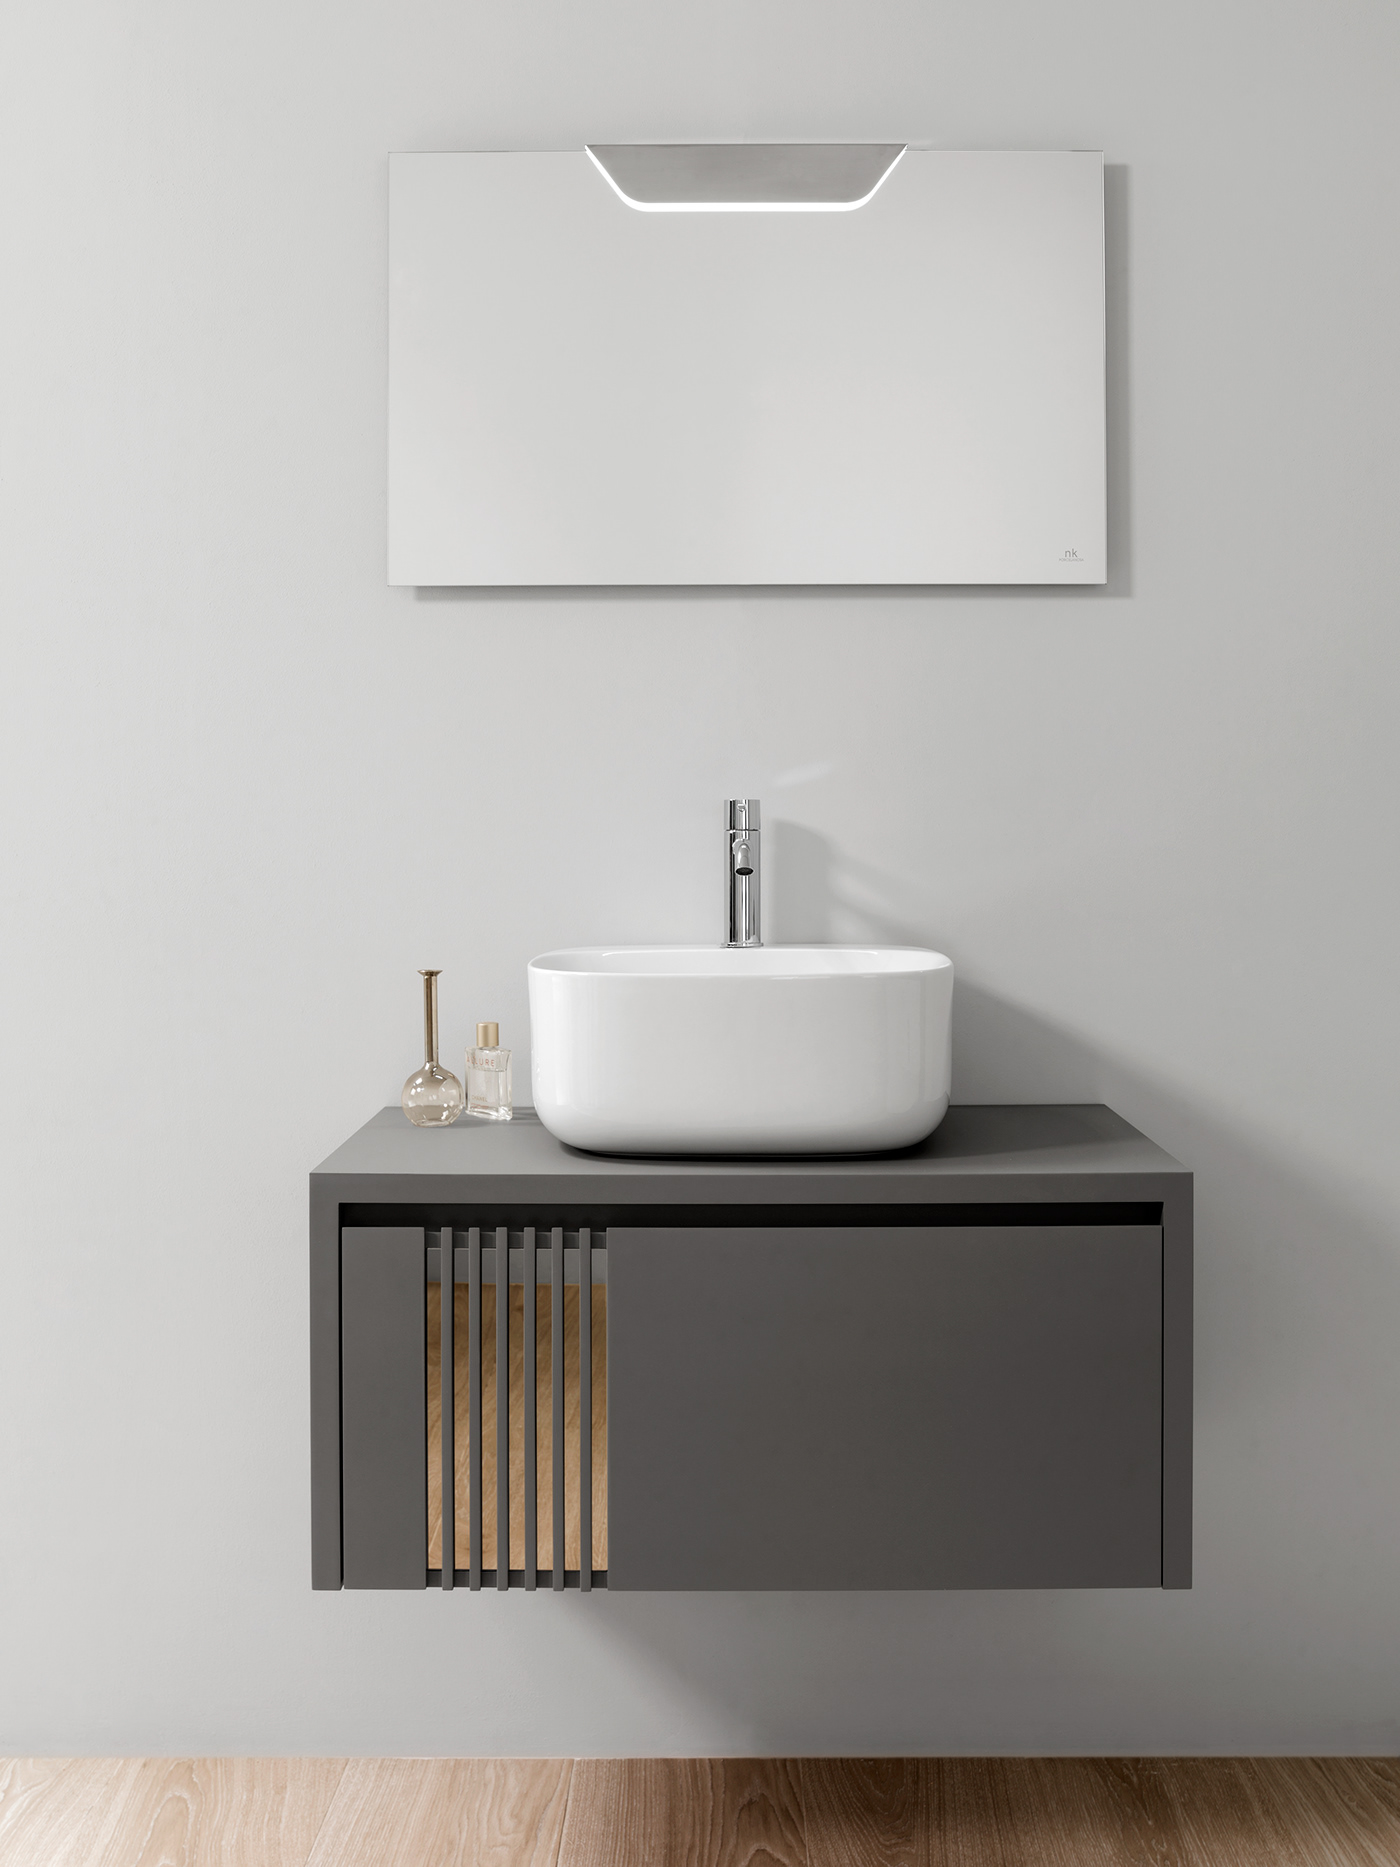 muebles Furntiure bathroom interior design  vidrio Label fenix